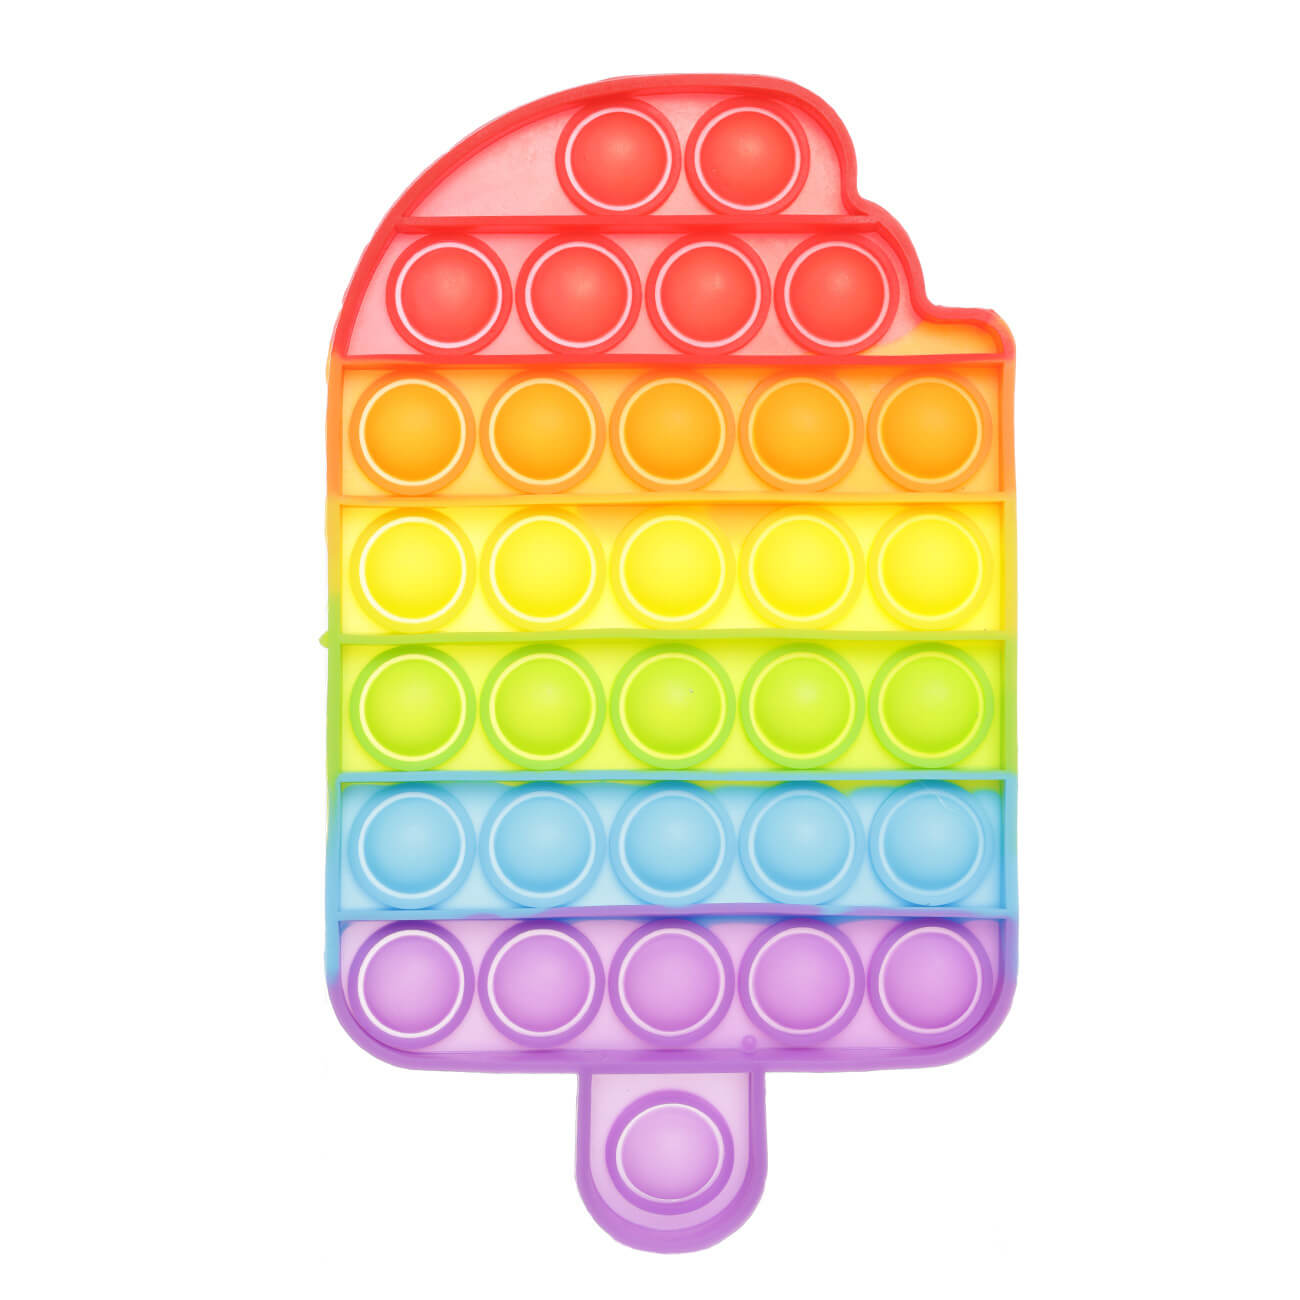 Игрушка-антистресс Pop-it, 18х10 см, силикон, цветная, Мороженое, Pop-it антистресс игрушка simple dimple 3 резиновых пузырька с карабином разно ный